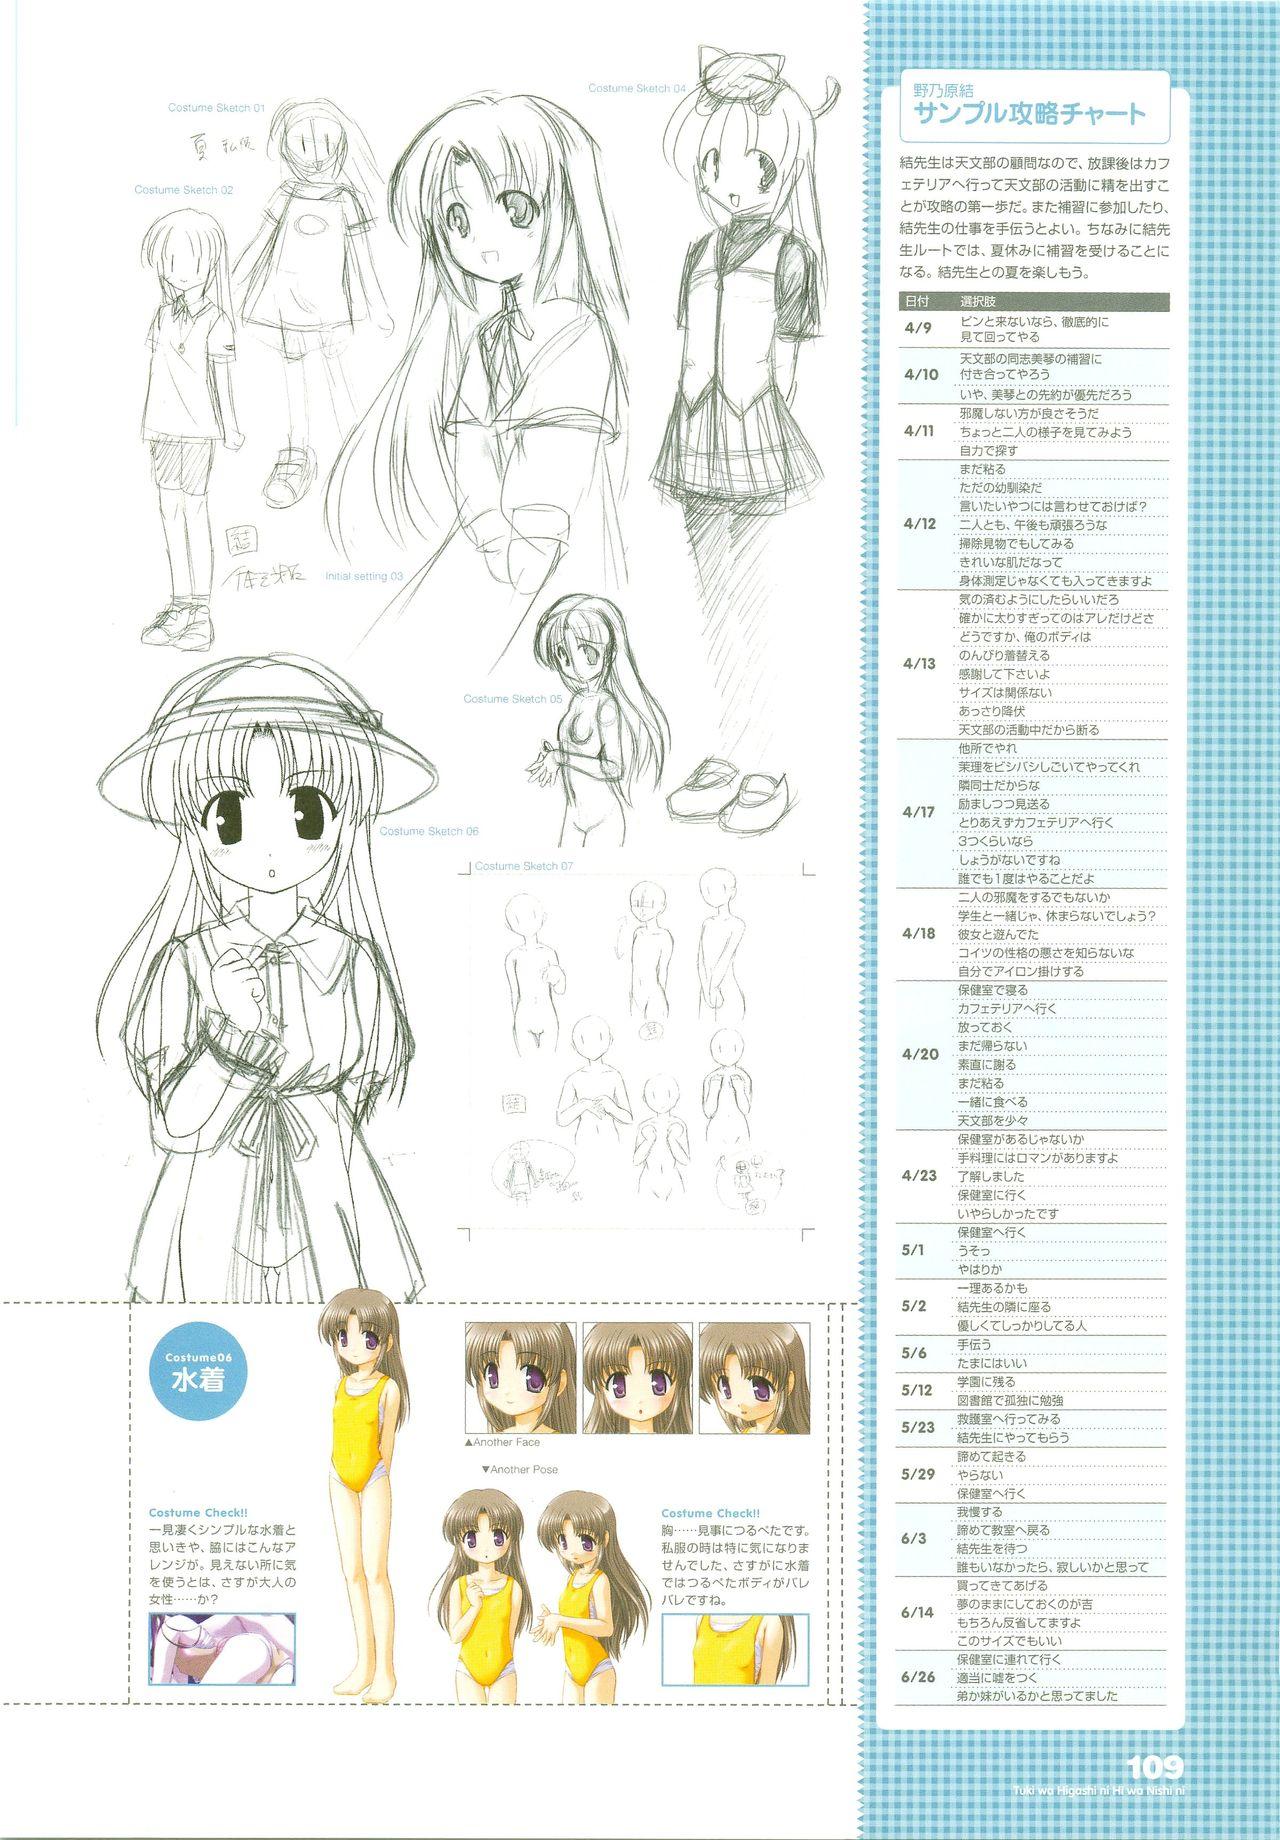 Tsuki wa Higashi ni Hi wa Nishi ni - Operation Sanctuary - Visual Fan Book Shokai Ban 136